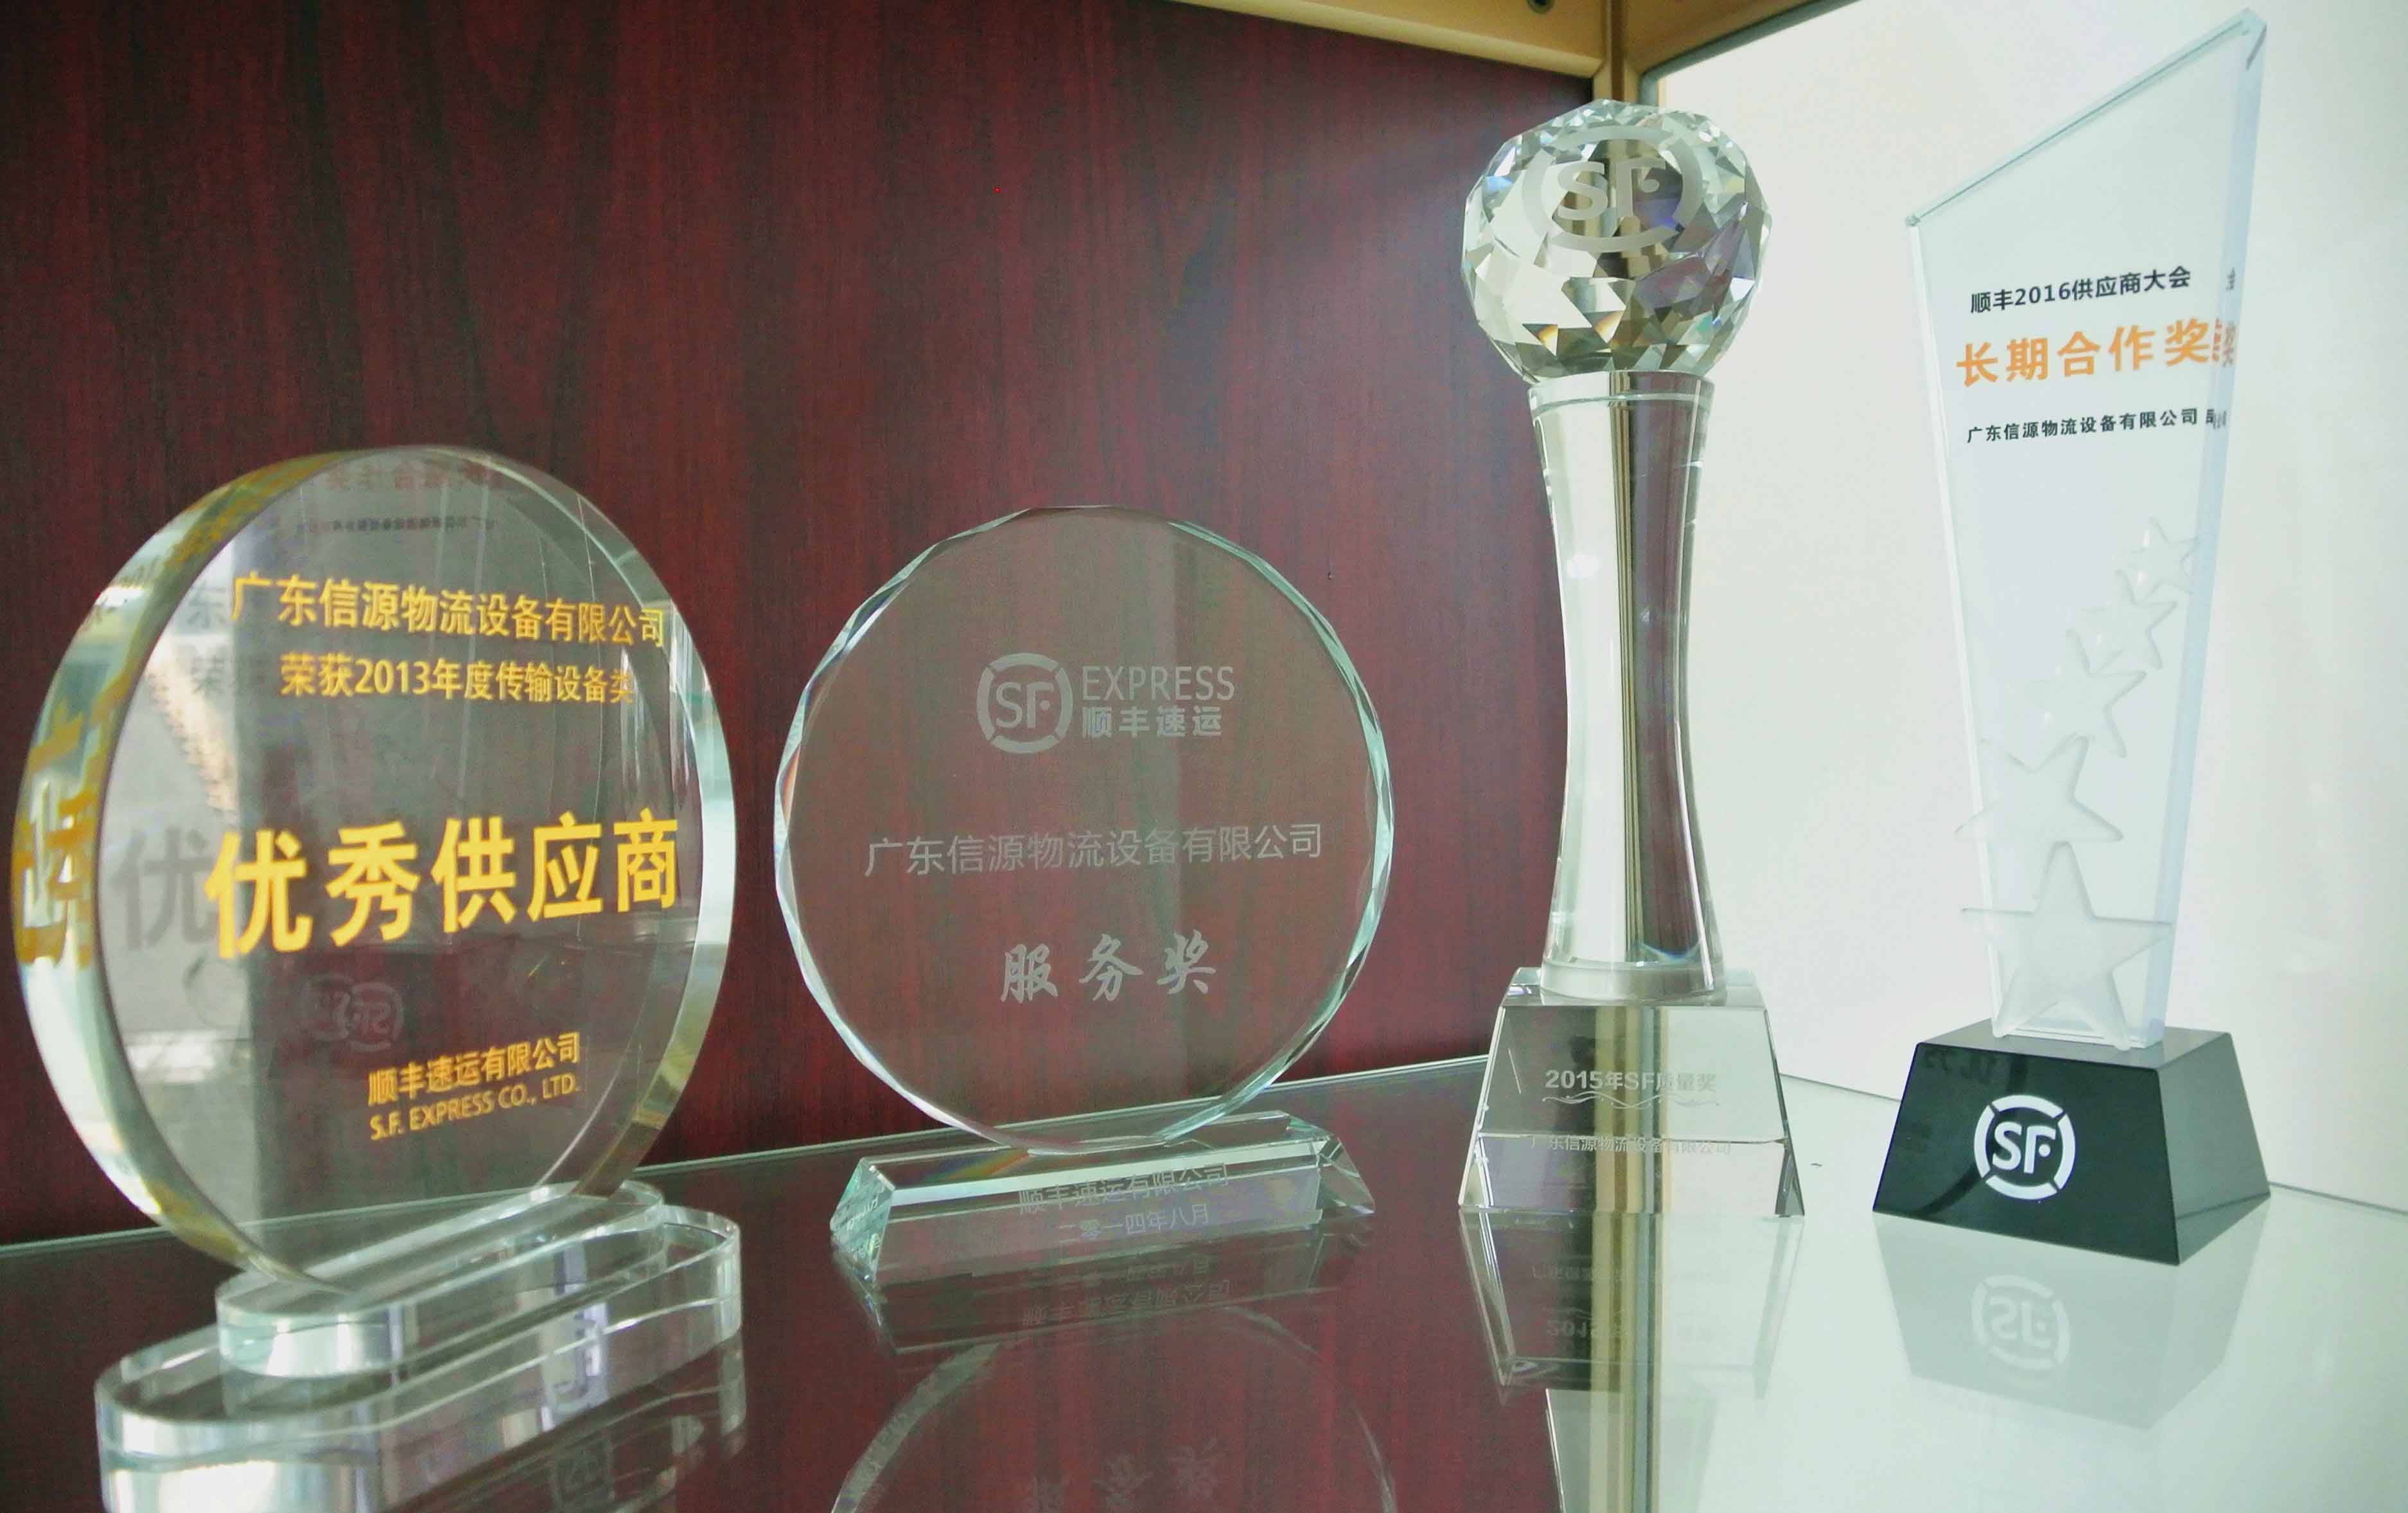 2013-2016年連續4年獲得順豐供應商(shāng)獎項